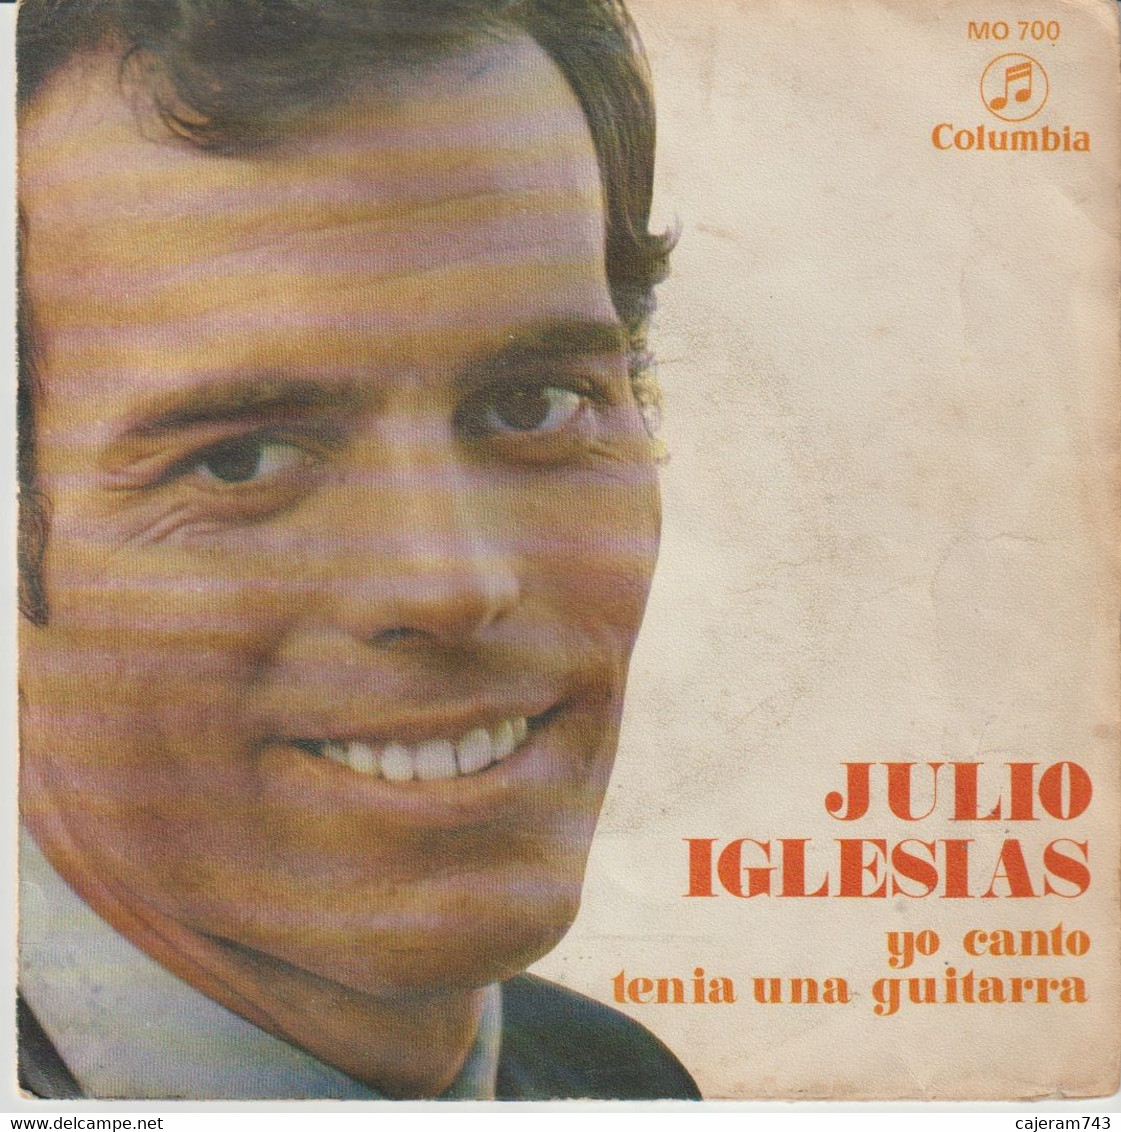 45T. JULIO IGLESIAS. Yo Canto - Tenia Una Guitarra. Pressage ESPAGNE - Spain - Other - Spanish Music